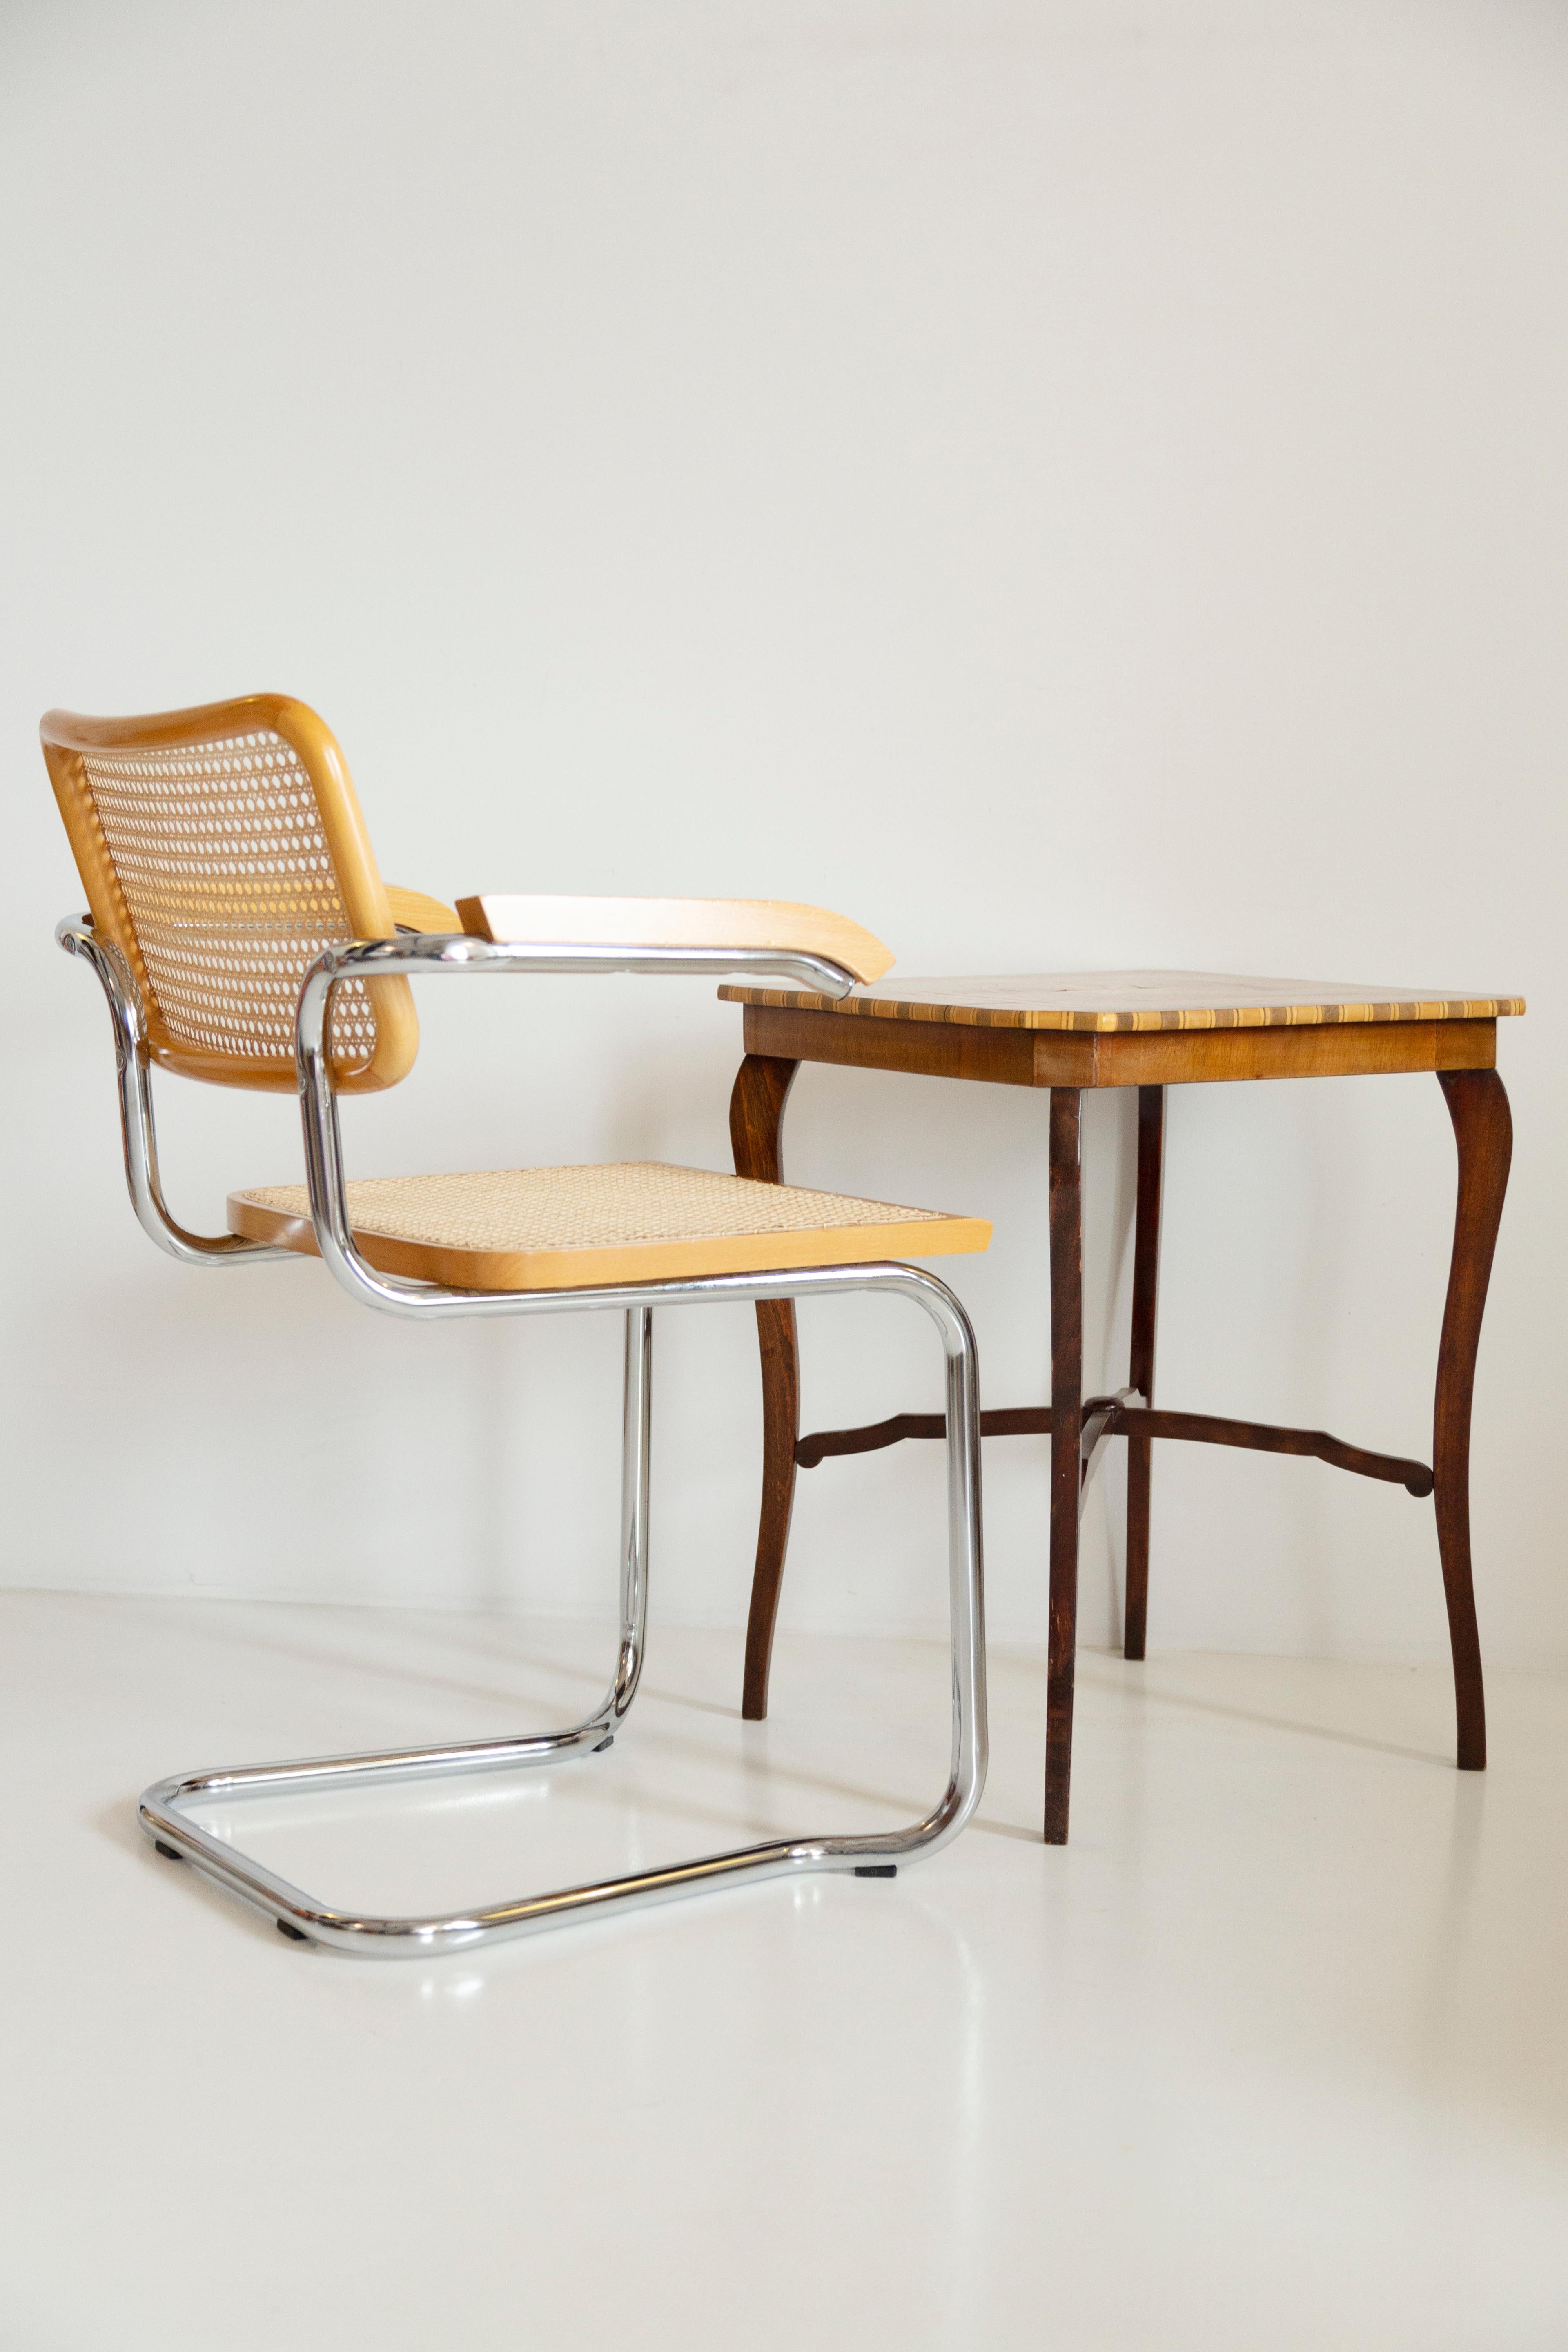 Schöner Stuhl aus Rattan, Samt und Holz aus der Mitte des Jahrhunderts. 

Der wunderbare und weltberühmte Cesca-Stuhl wurde in den 1920er Jahren von Marcel Breuer entworfen. Der Cesca-Stuhl wird u.a. von Firmen wie Thonet oder Knoll hergestellt,